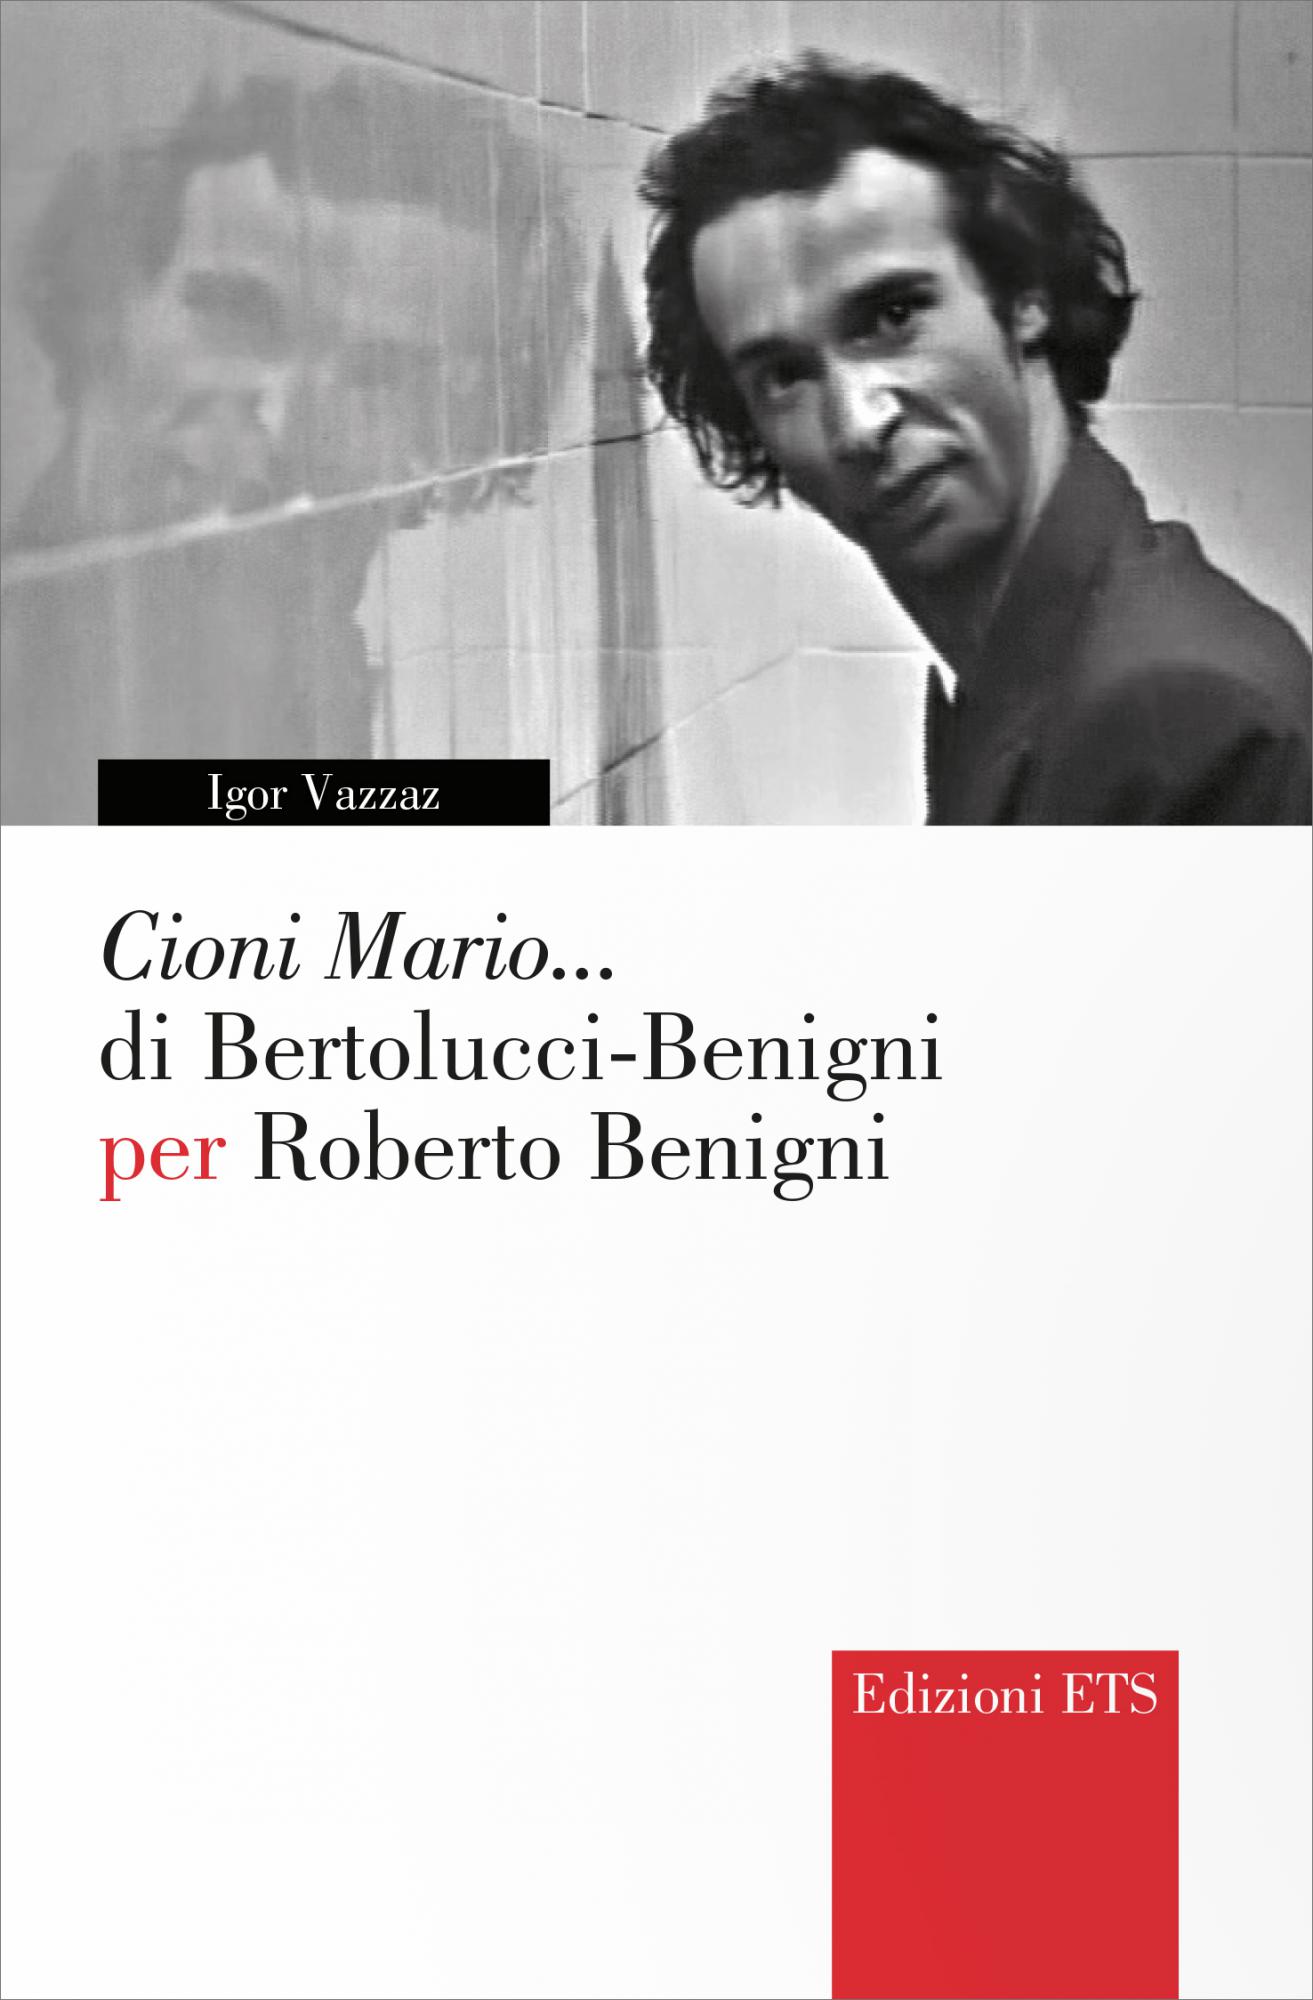 Cioni Mario... di Bertolucci-Benigni per Roberto Benigni